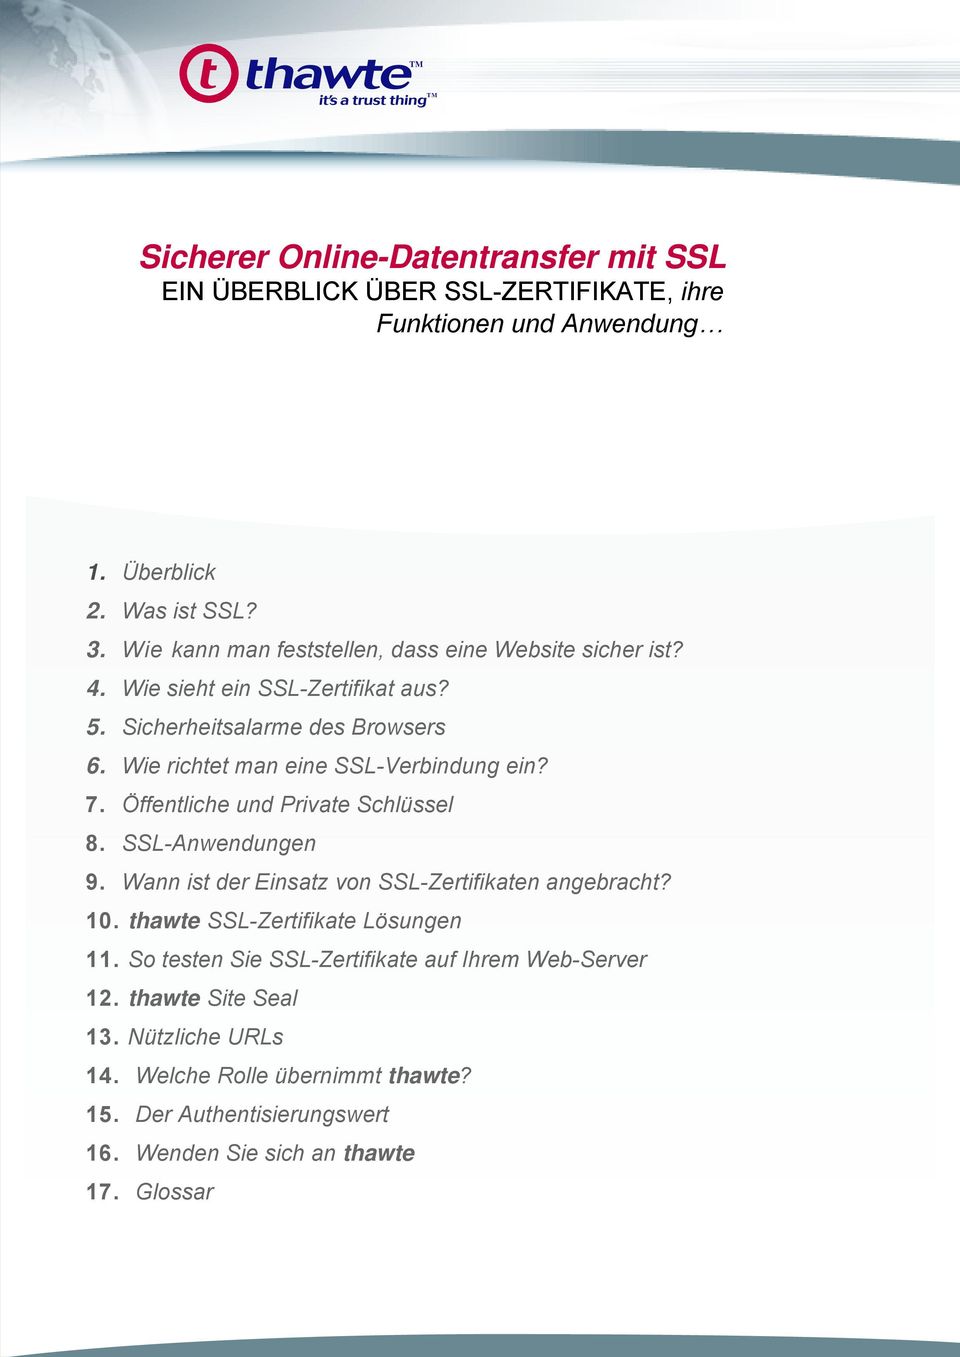 Wie richtet man eine SSL-Verbindung ein? 7. Öffentliche und Private Schlüssel 8. SSL-Anwendungen 9. Wann ist der Einsatz von SSL-Zertifikaten angebracht? 10.